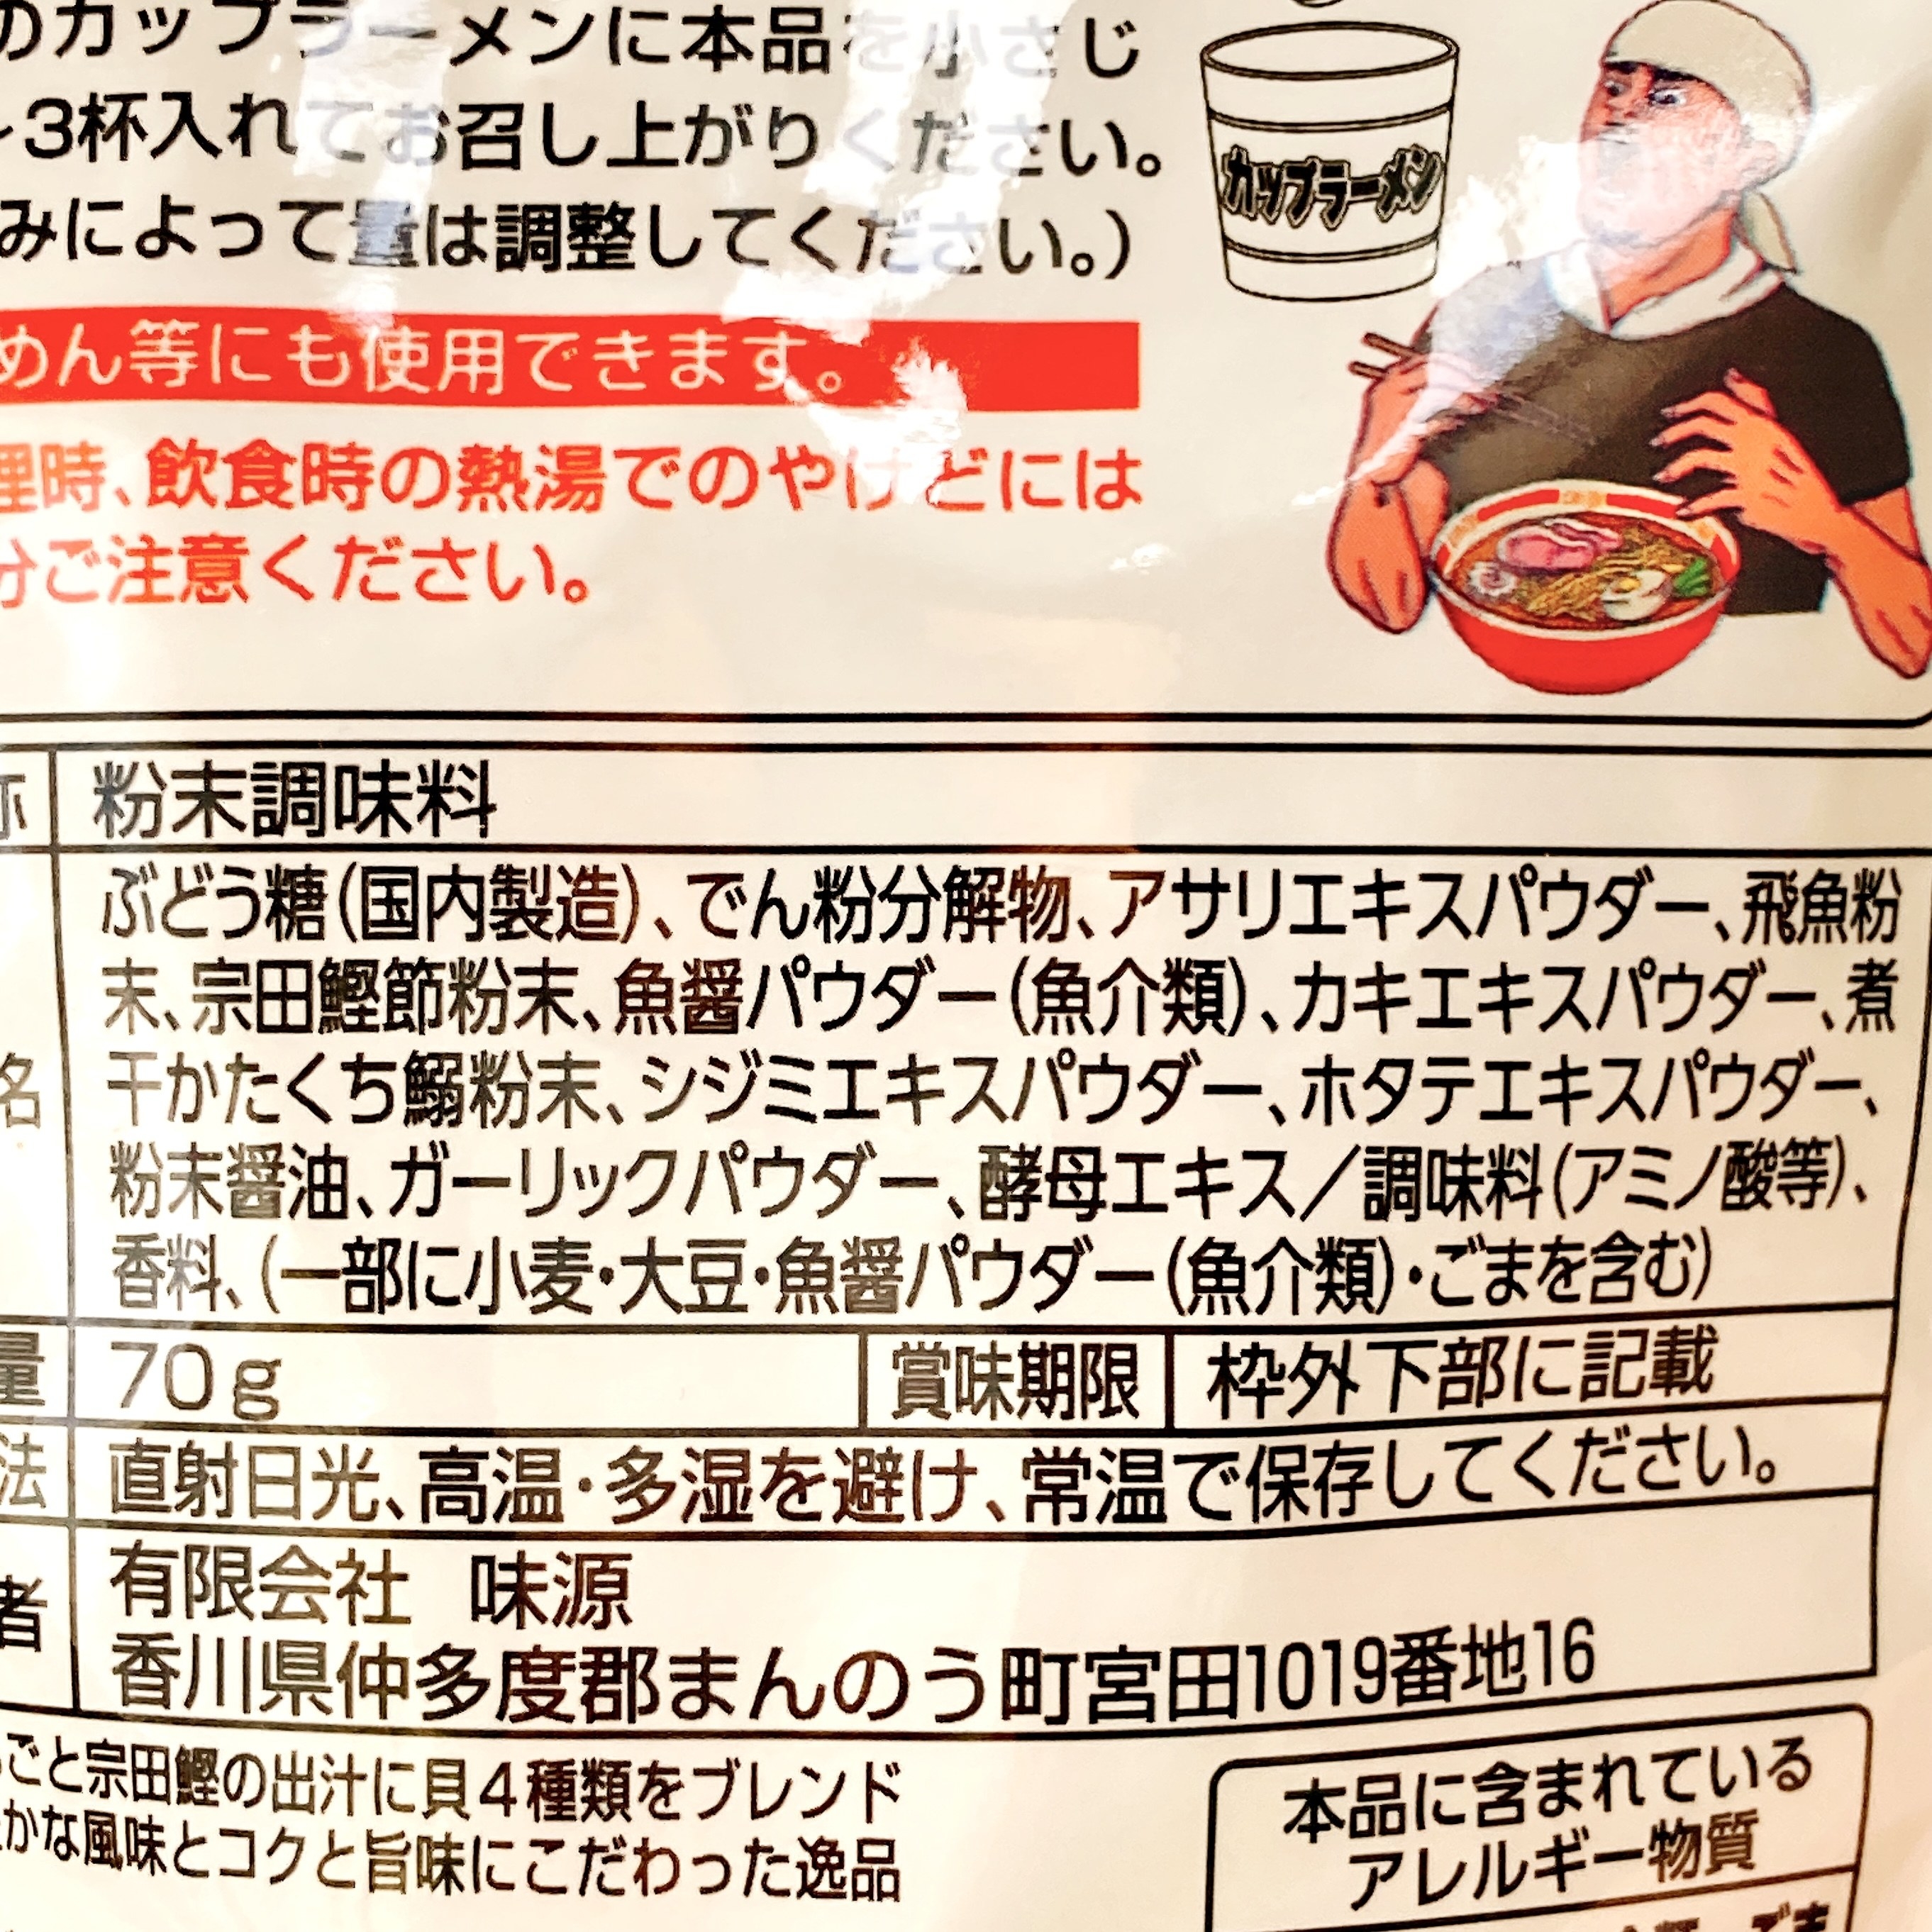 ドン・キホーテのオススメ商品「カップラーメンが更に旨くなる魔法の粉」